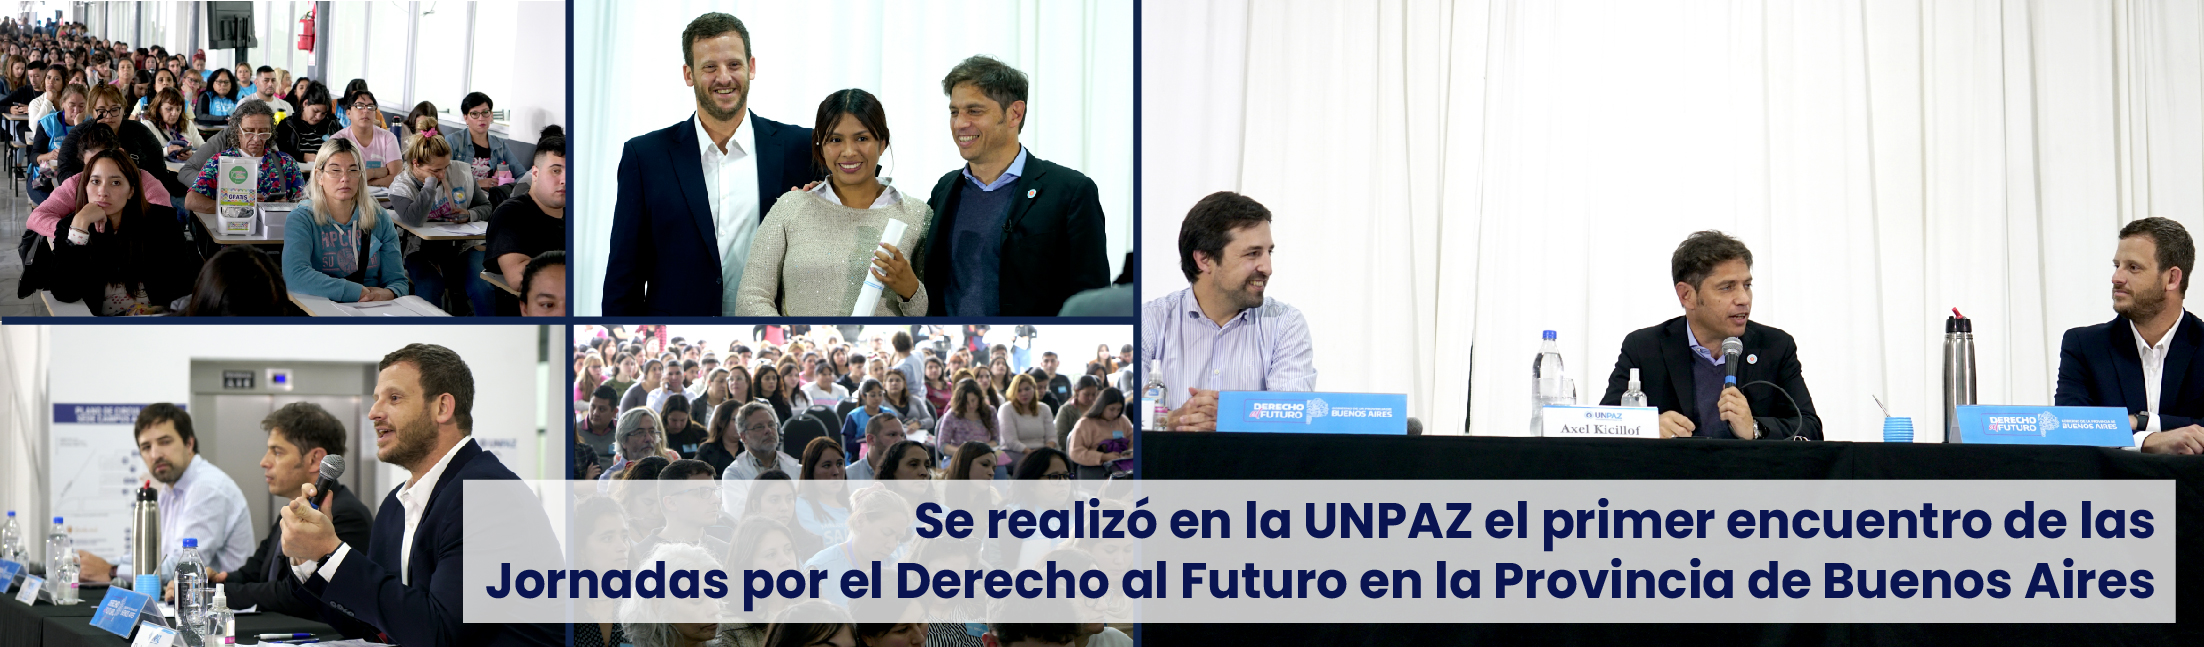 Se realizó en la UNPAZ el primer encuentro de las Jornadas por el Derecho al Futuro en la Provincia de Buenos Aires 